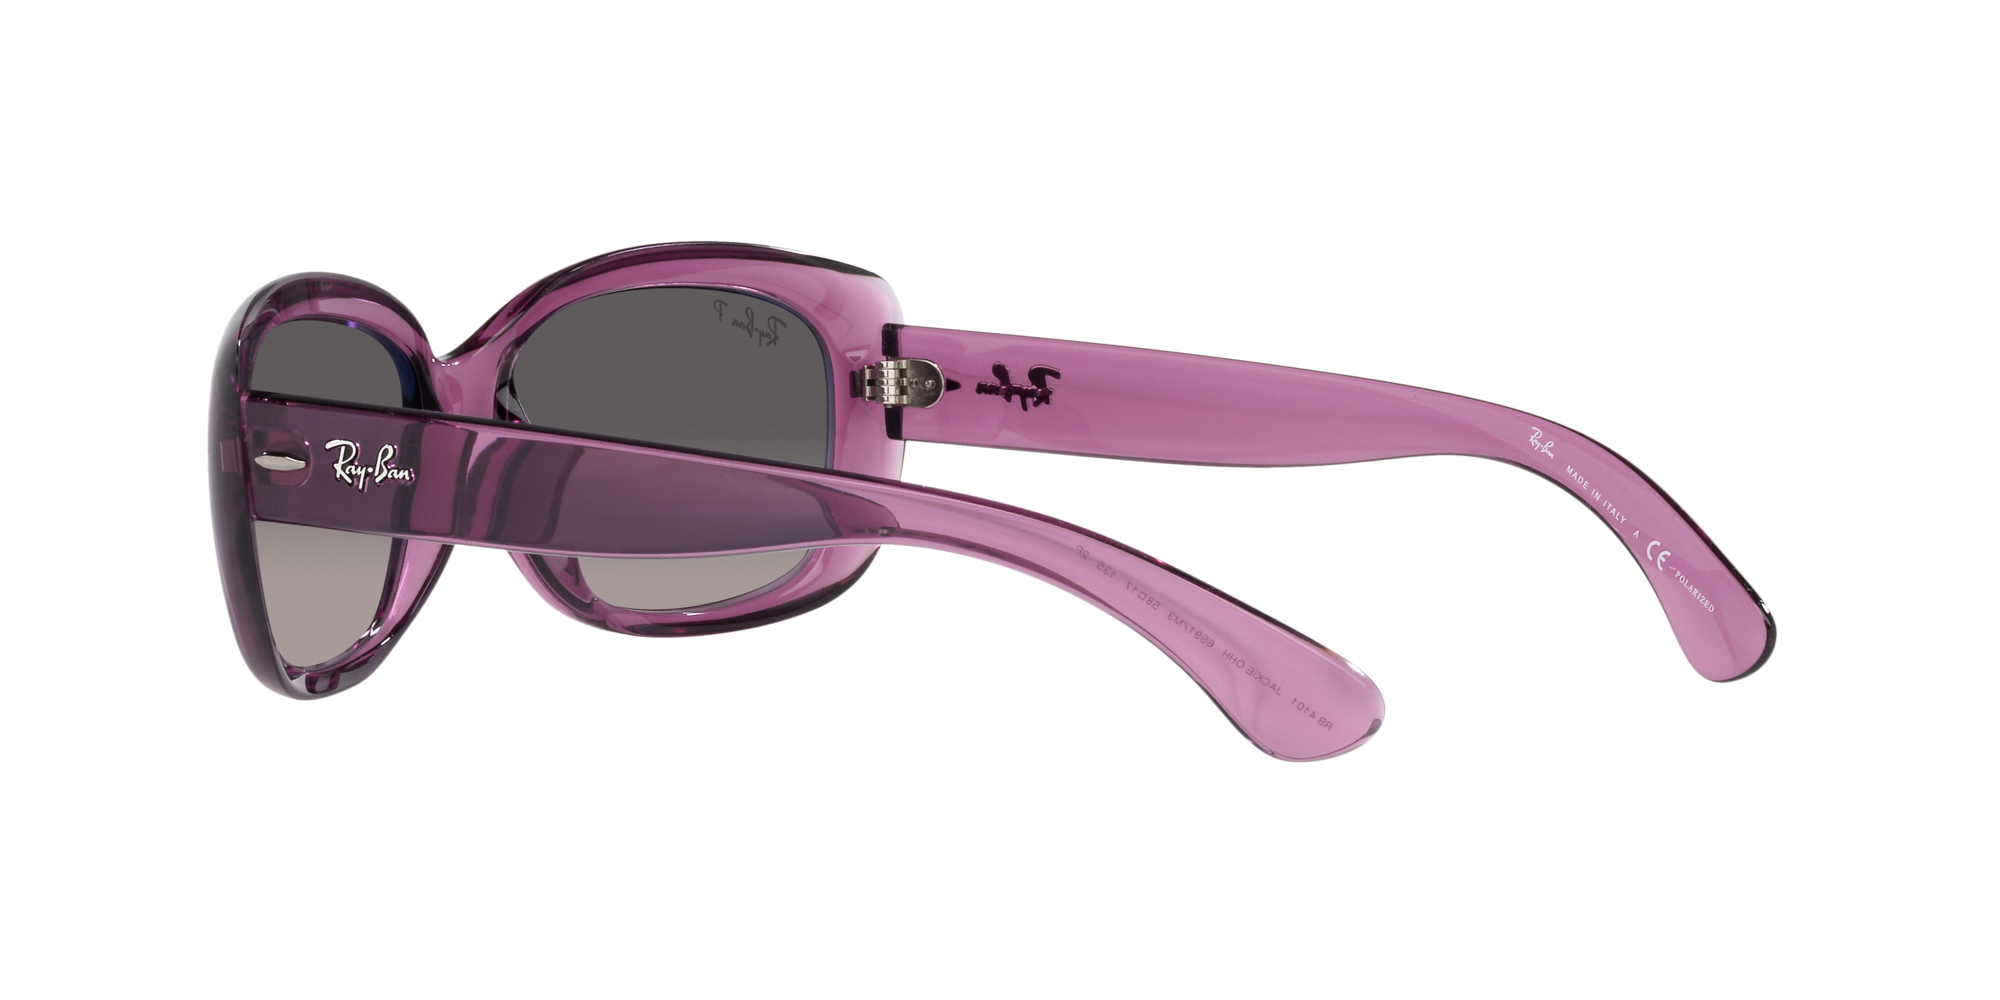 Jackie ohh Ray Ban Sonnenbrille für Damen in Violett/Transparent RB4101 6591M3 58